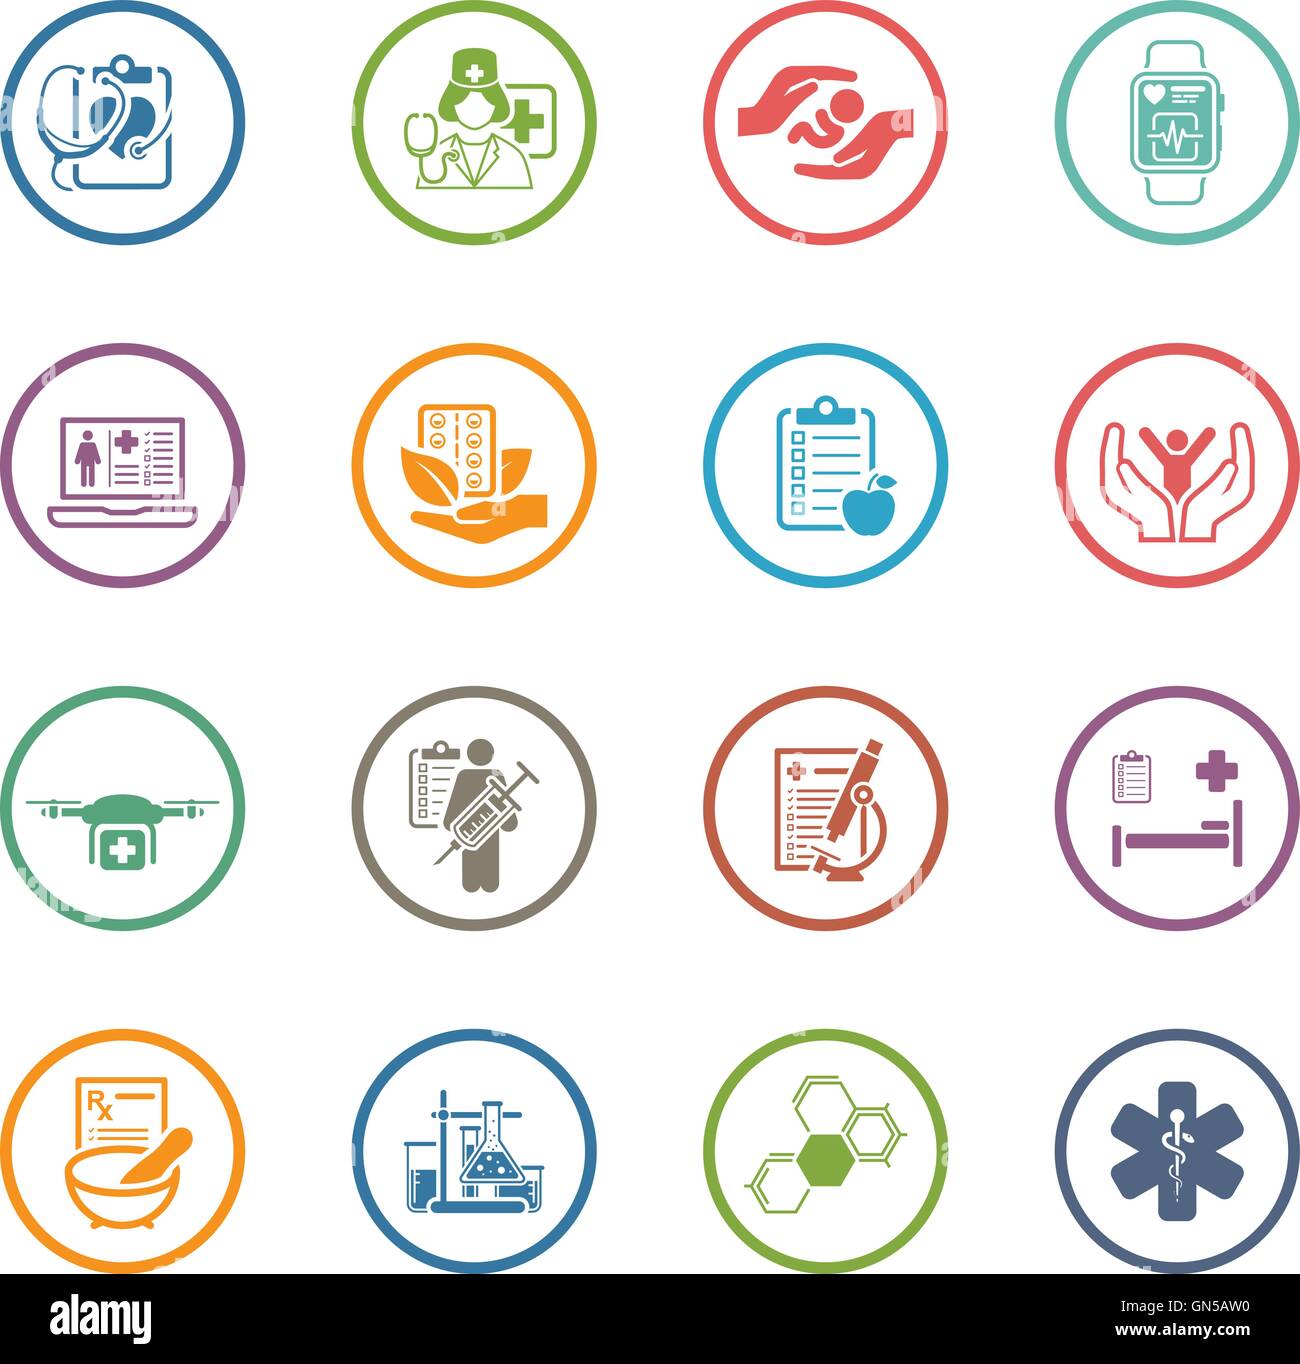 Medizin und Gesundheitswesen Icons Set. Flaches Design. Stock Vektor